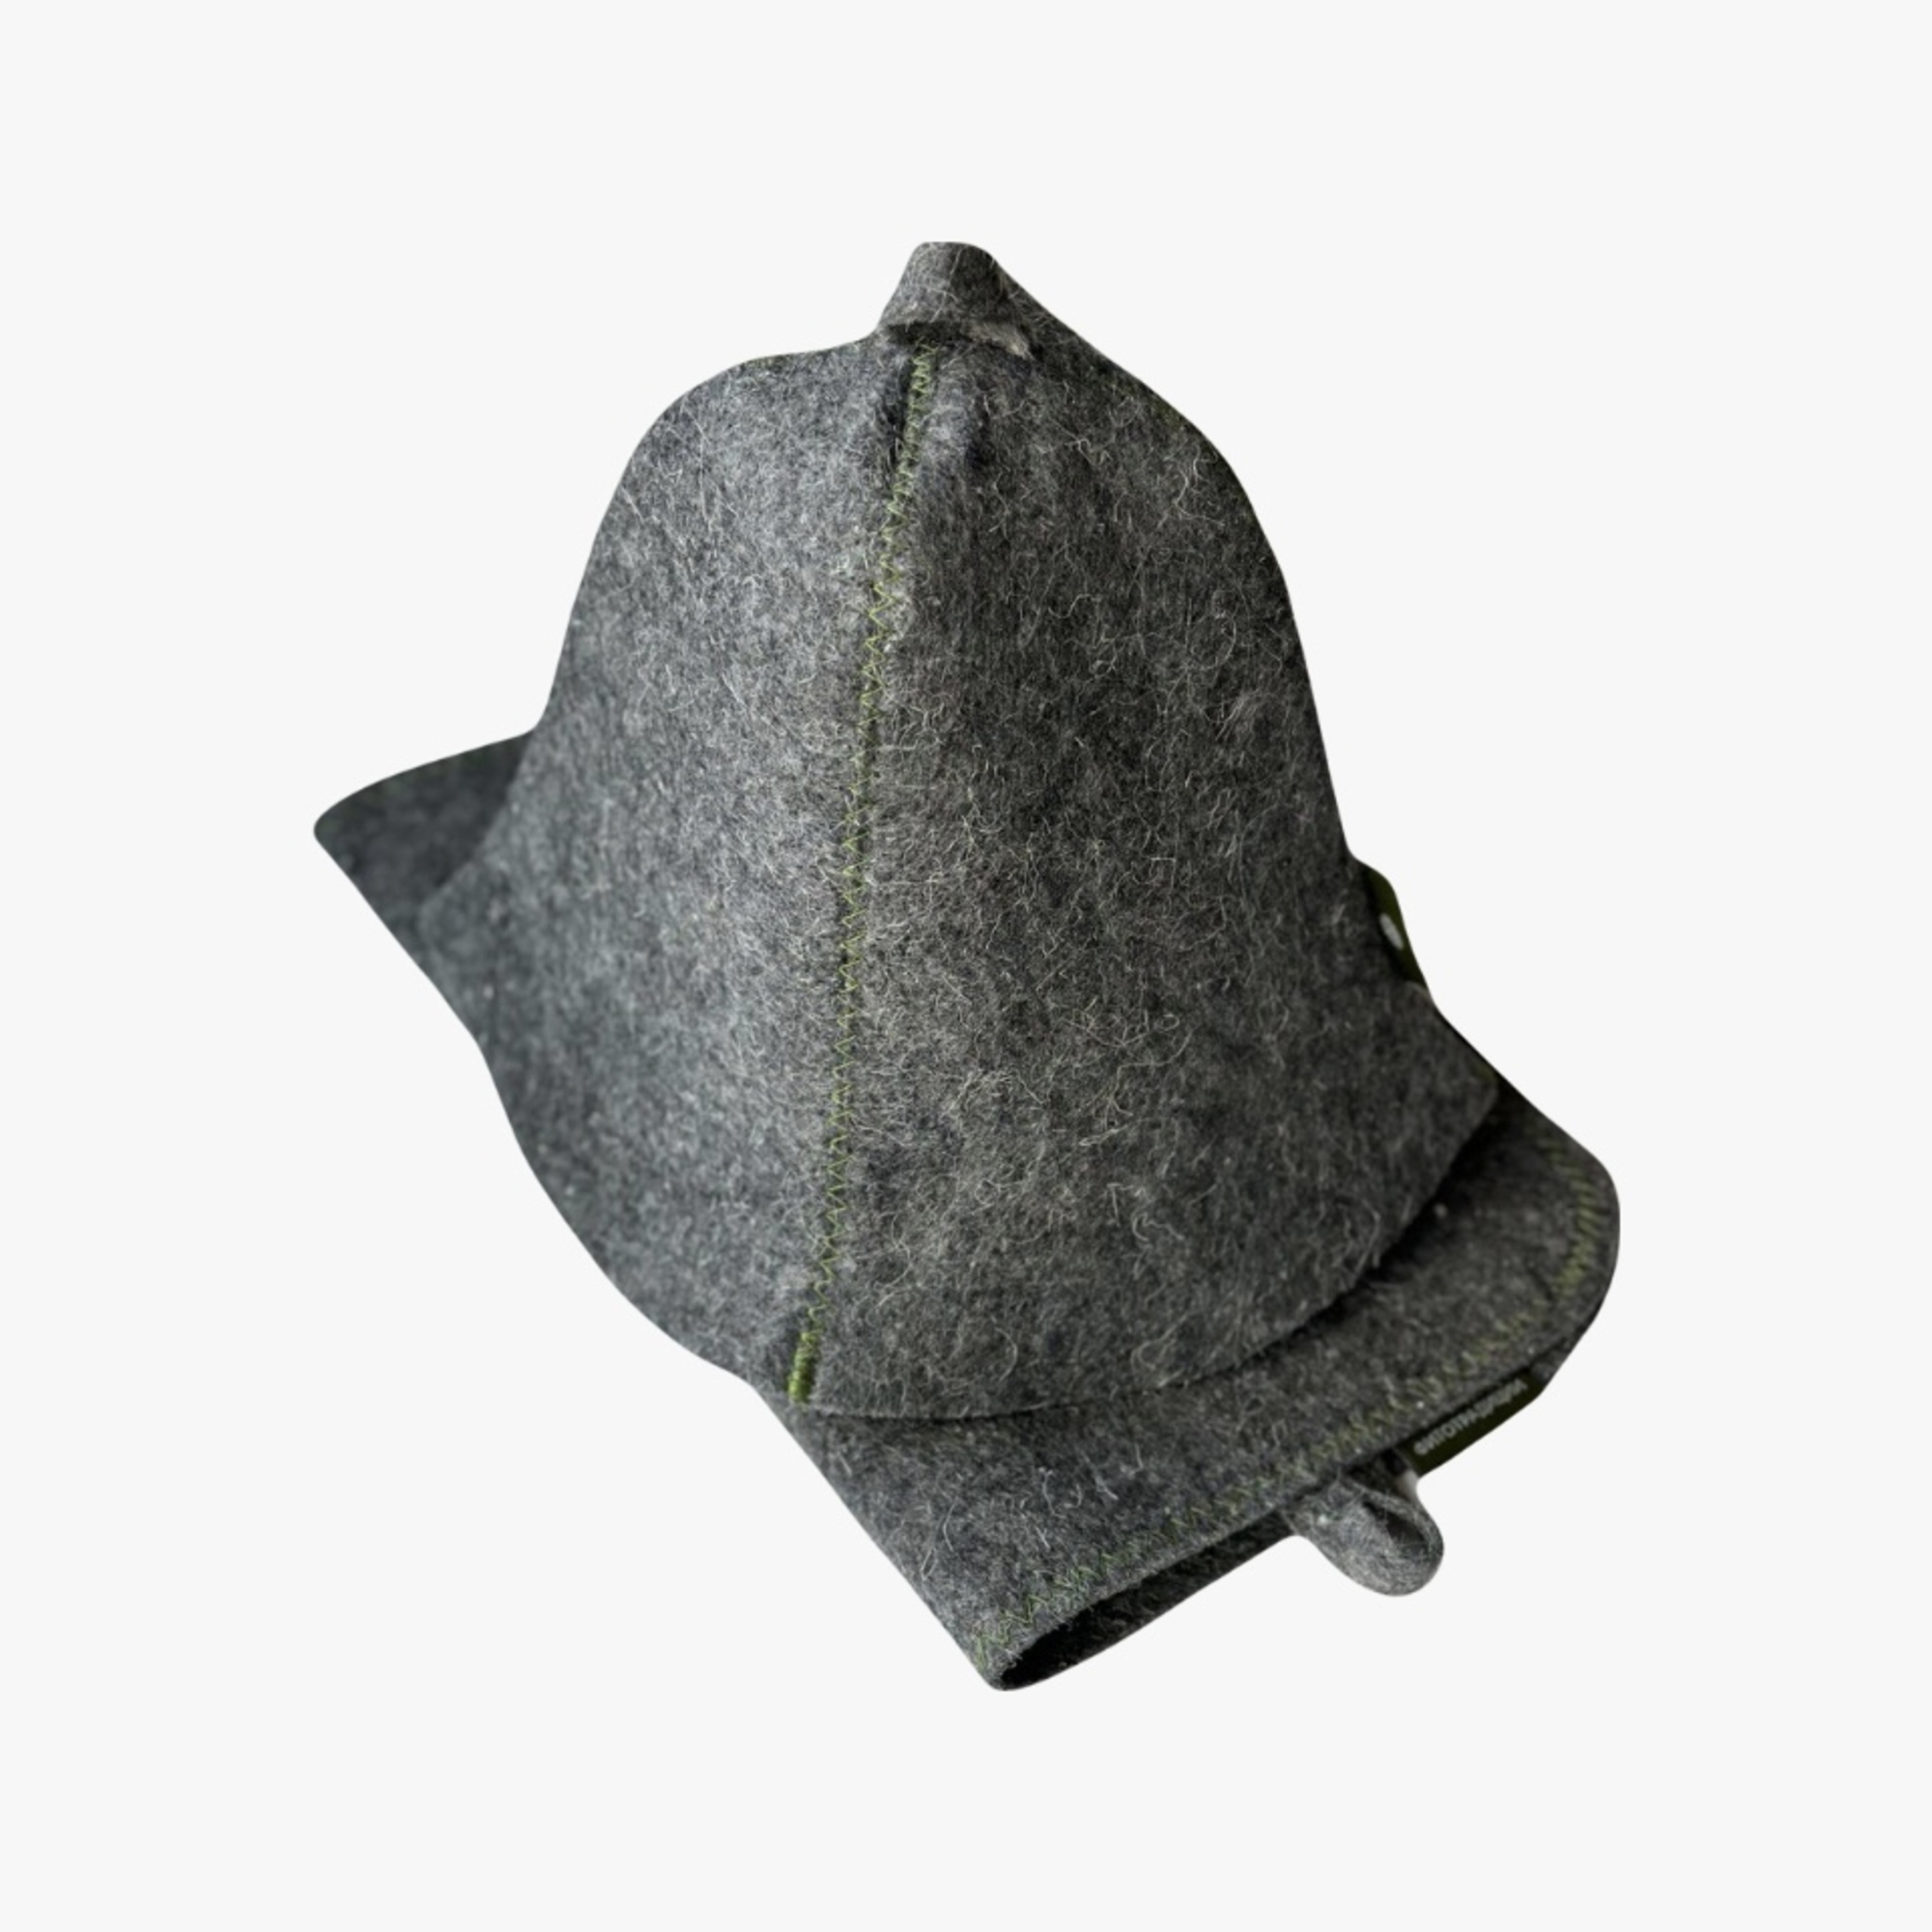 Комплект банный Фитотрадиции шапка и коврик серый коврик противоскользящий под кожу крокодила 20×13 см